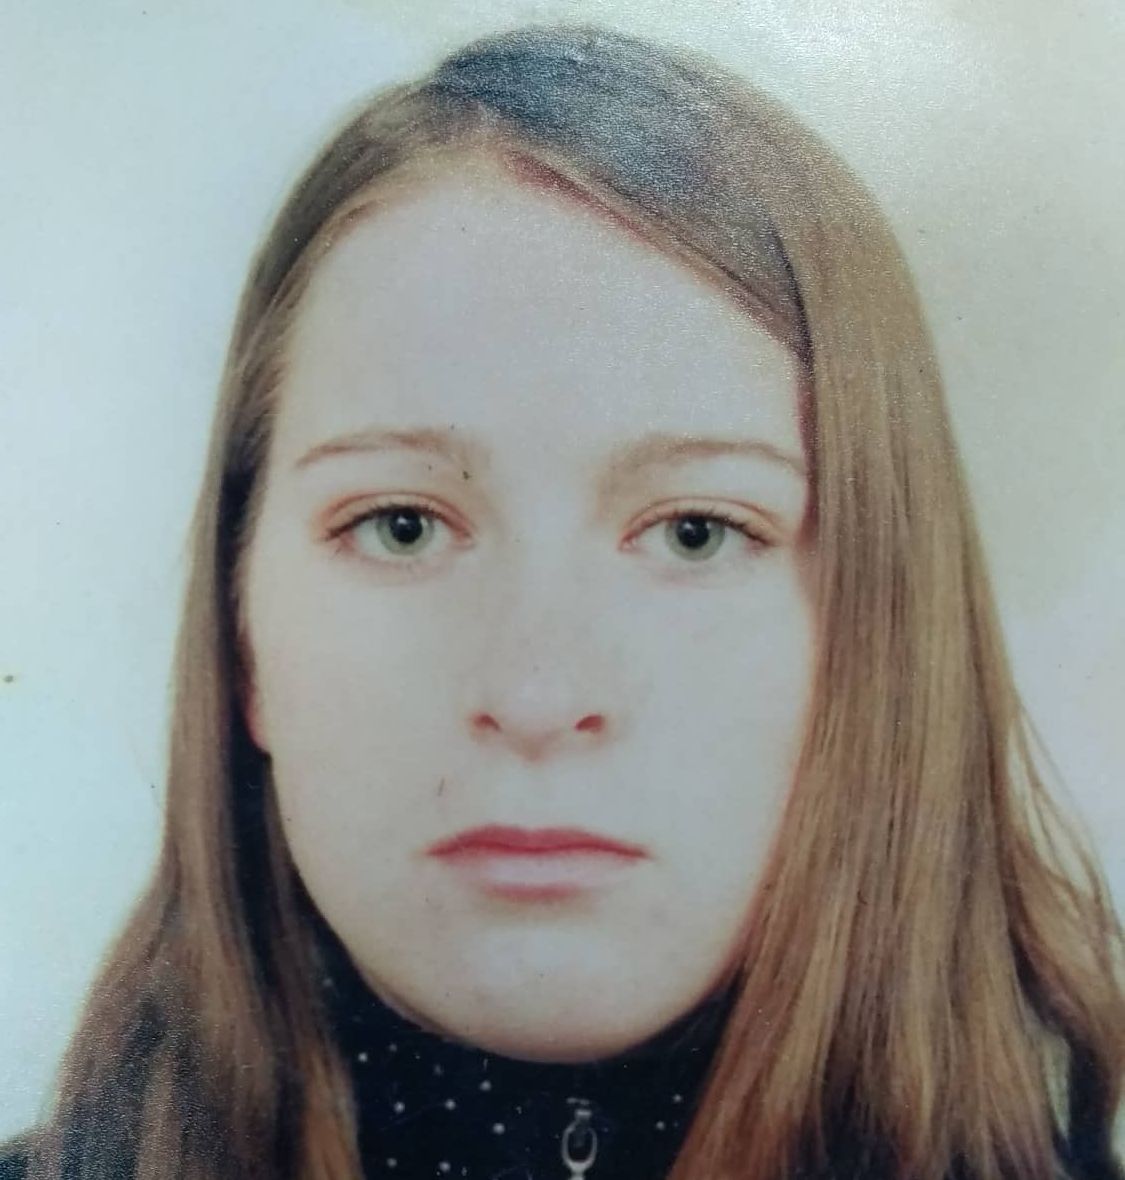 Родичі просять допомогти знайти жінку з Івано-Франківщини